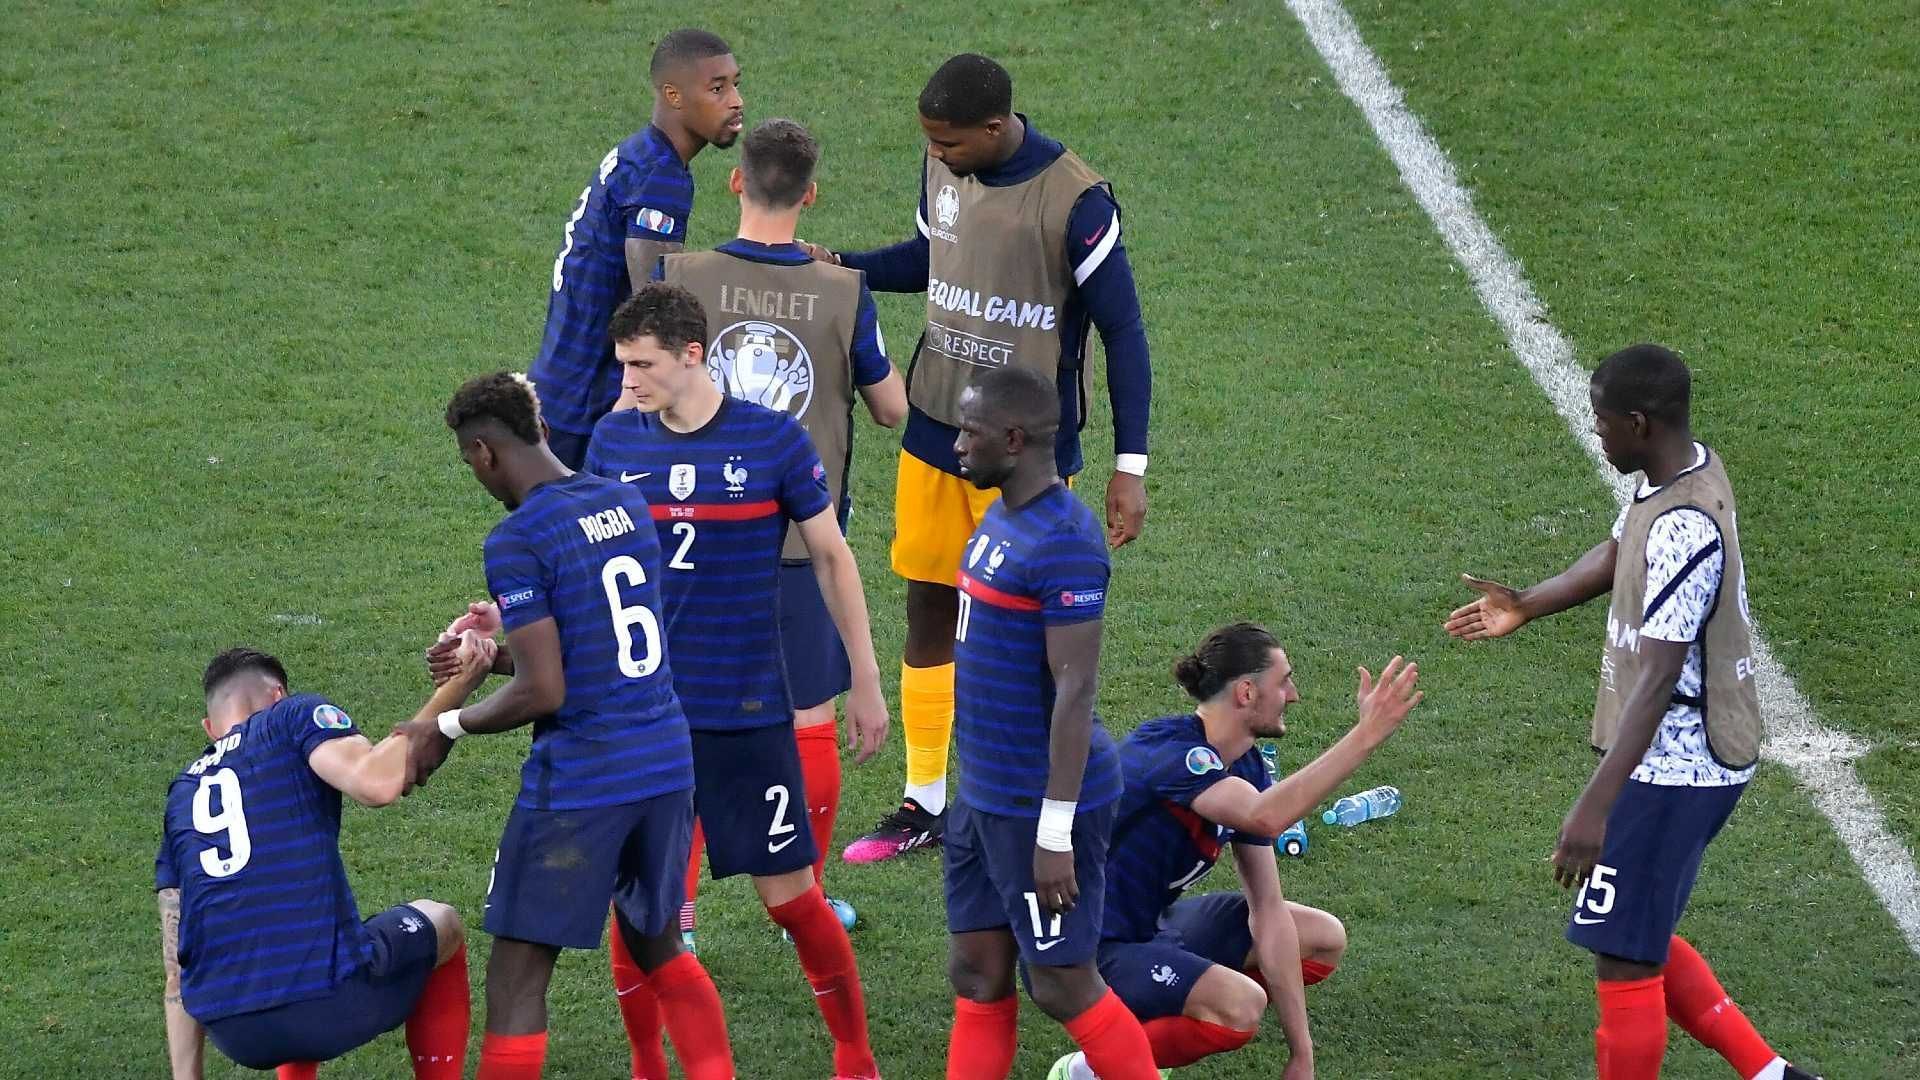 
                <strong>Le Figaro (Frankreich) </strong><br>
                "Ein legendäres Spiel und ewiges Bedauern für Les Bleus, die im Achtelfinale ausgeschieden sind. Es gibt Abende, an die man sich mit Freude oder Traurigkeit erinnert, auch noch Jahre später."
              